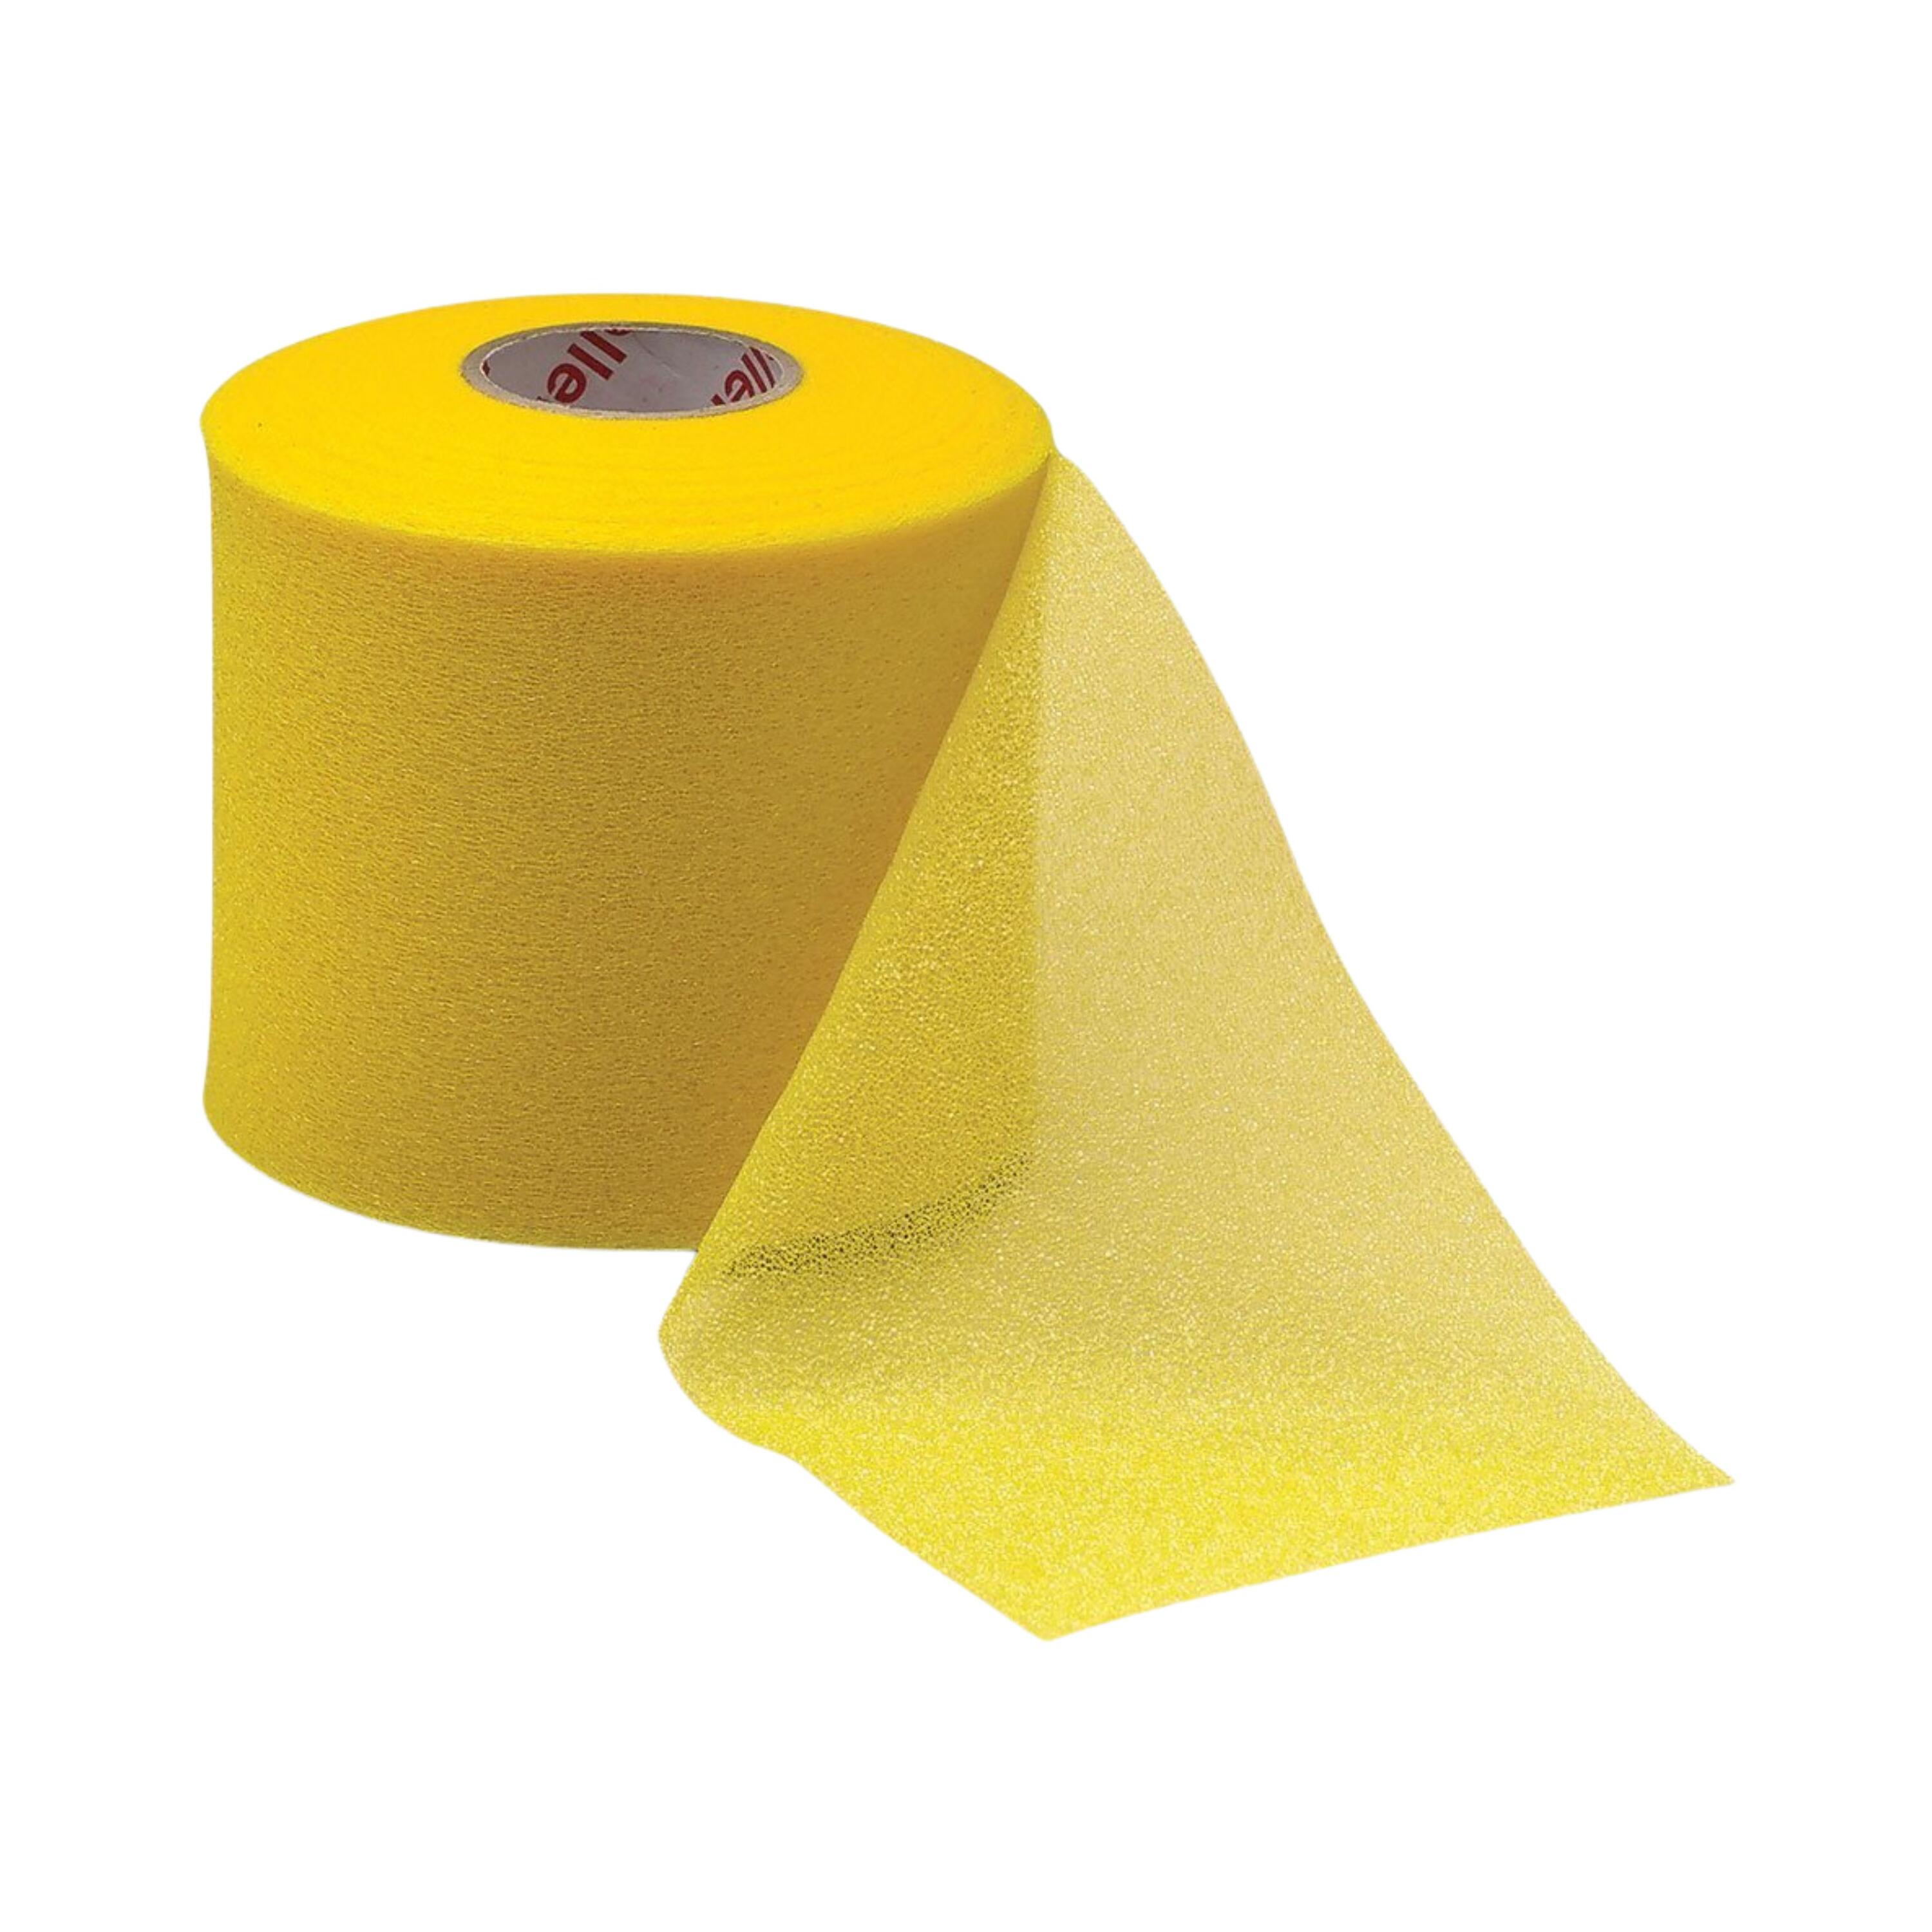 MUELLER Mueller M Wrap Lightweight Foam Underwrap Between Tape & Skin - Gold (Pack of 4)